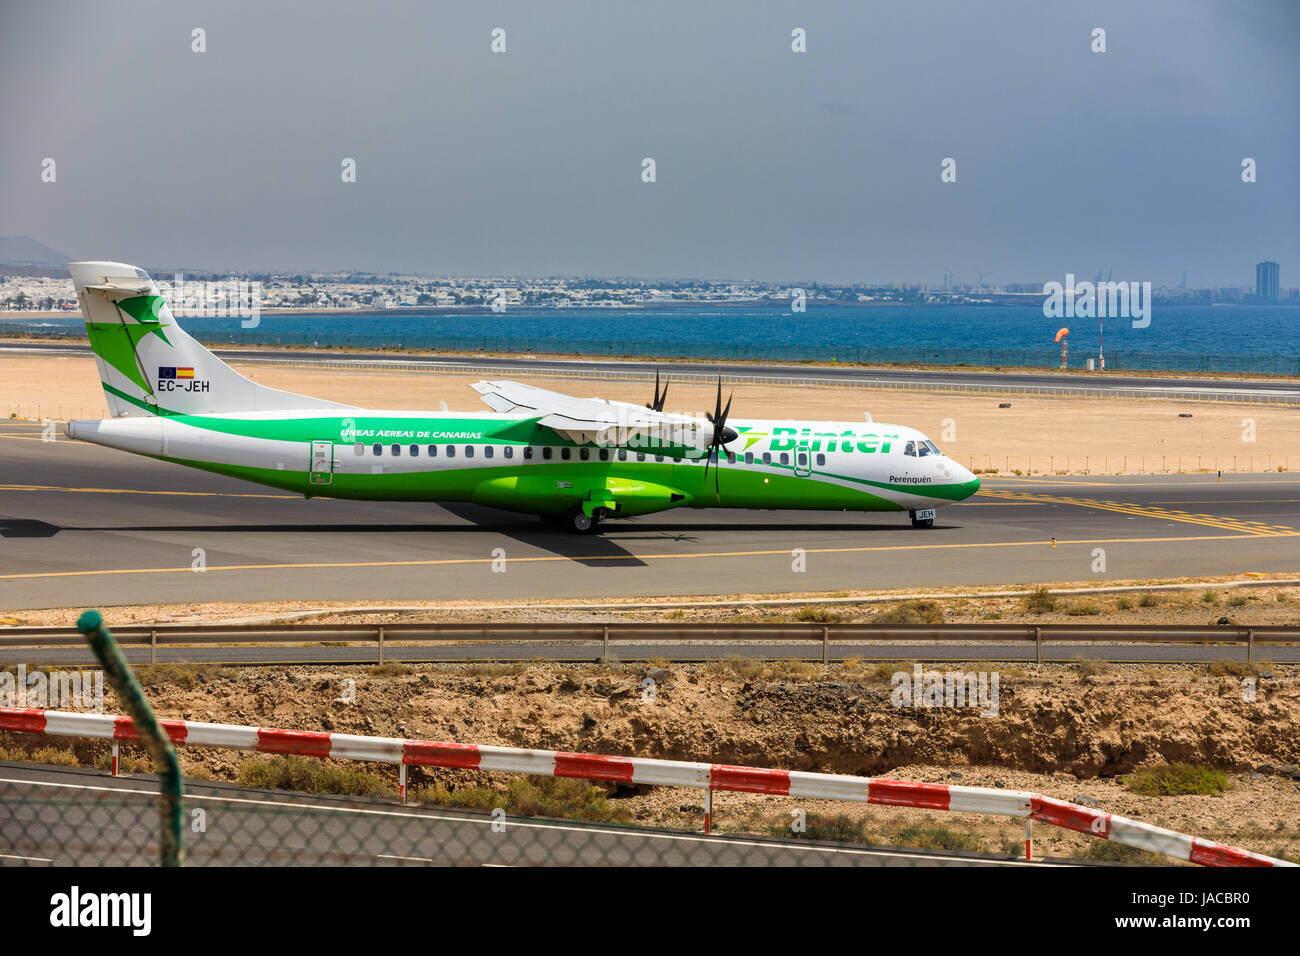 ARECIFE, Spagna - Aprile 16 2017: ATR 72 di Binter con la registrazione CE-JEH pronto al decollo a Lanzarote Airport Foto Stock